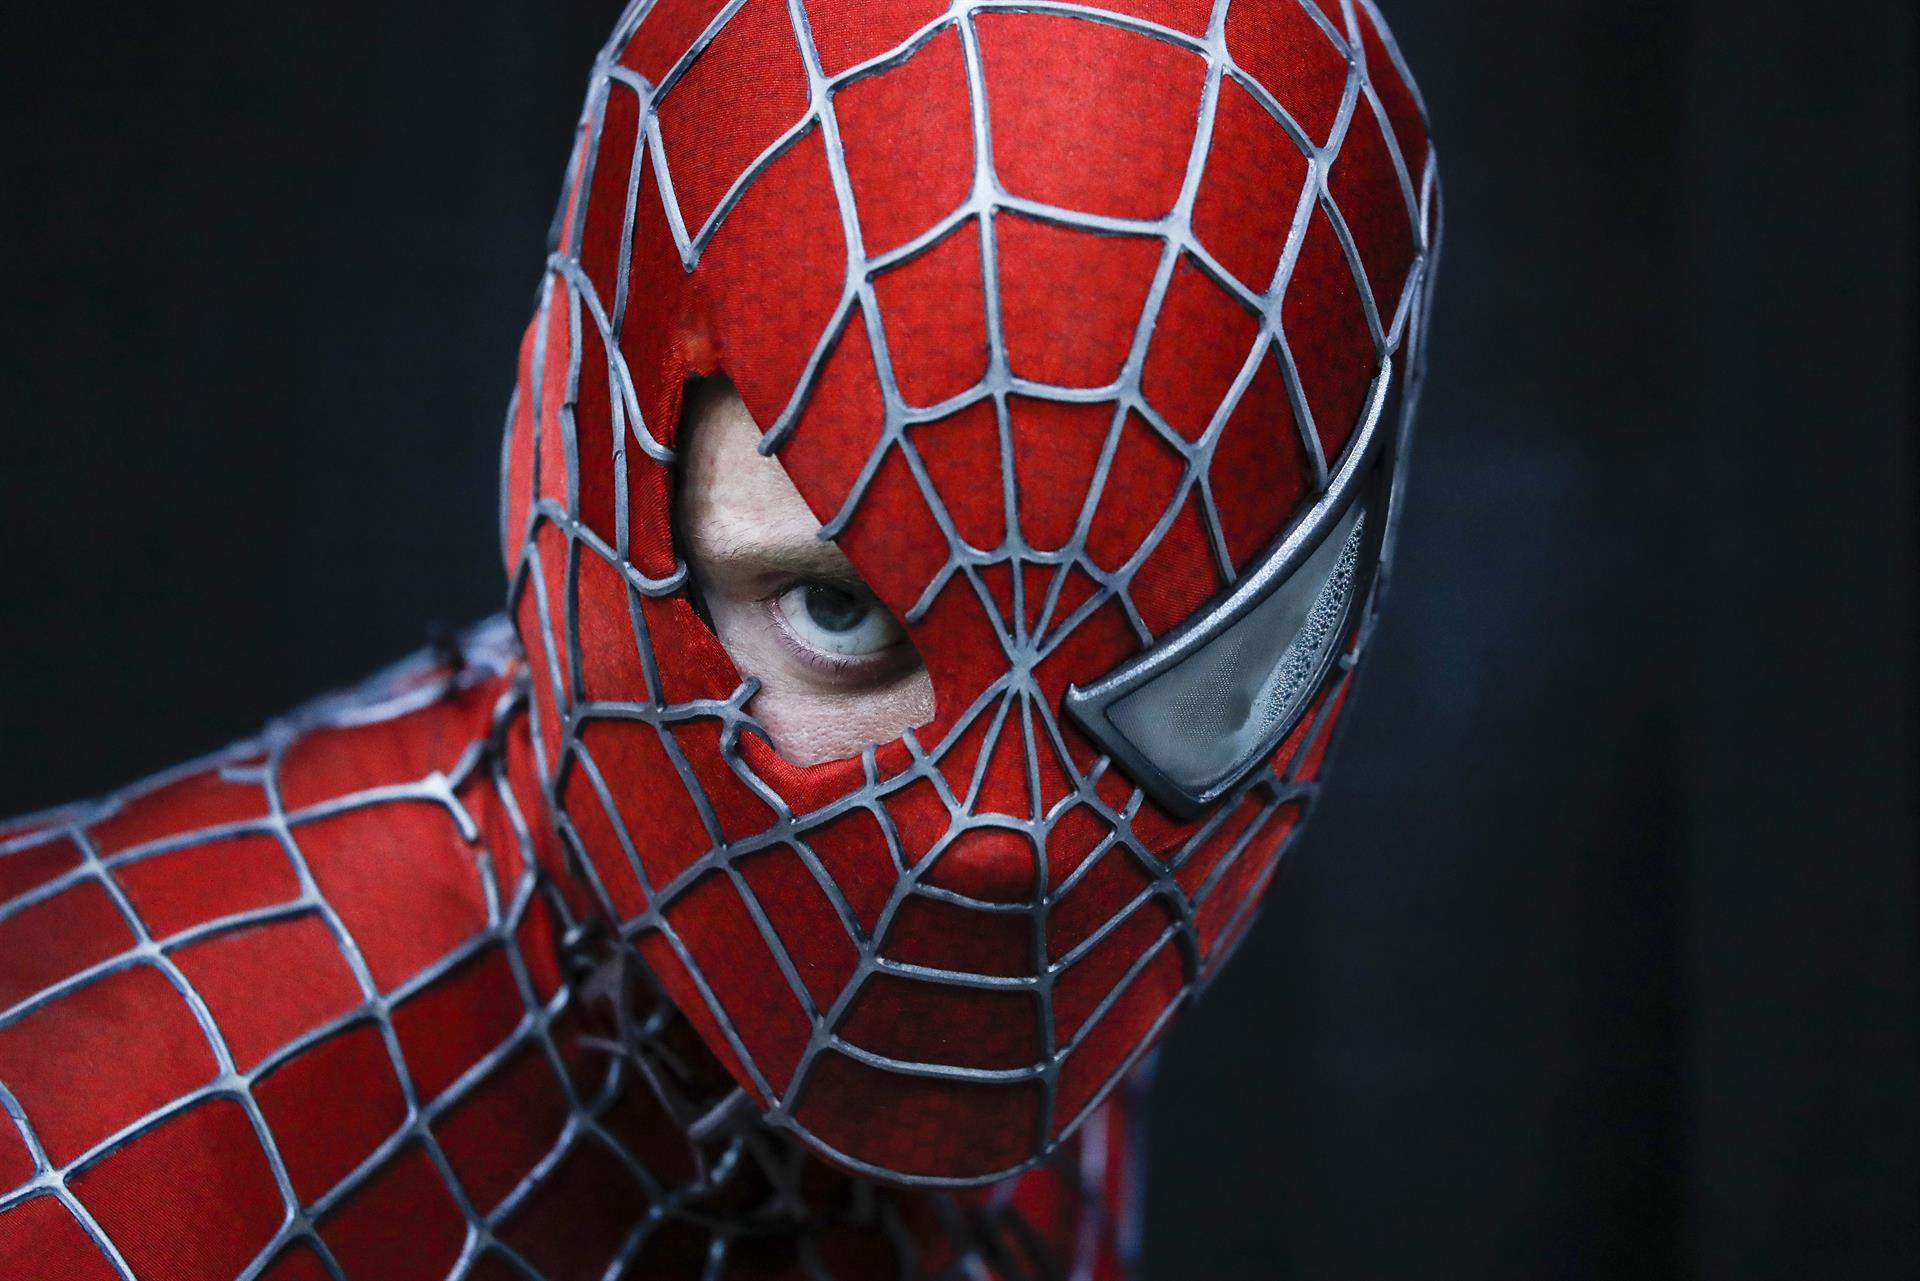 ARCHIVO/EFE/EPA/CAROLINE BREHMAN
 
EEUU CÓMIC: Los Ágeles (Estados Unidos), 04/12/2021.- Chase Hronis disfrazado de Spider-Man posa para el fotógrafo durante la Comic Con de Los Ángeles, Estados Unidos. EFE/ Caroline Brehman
